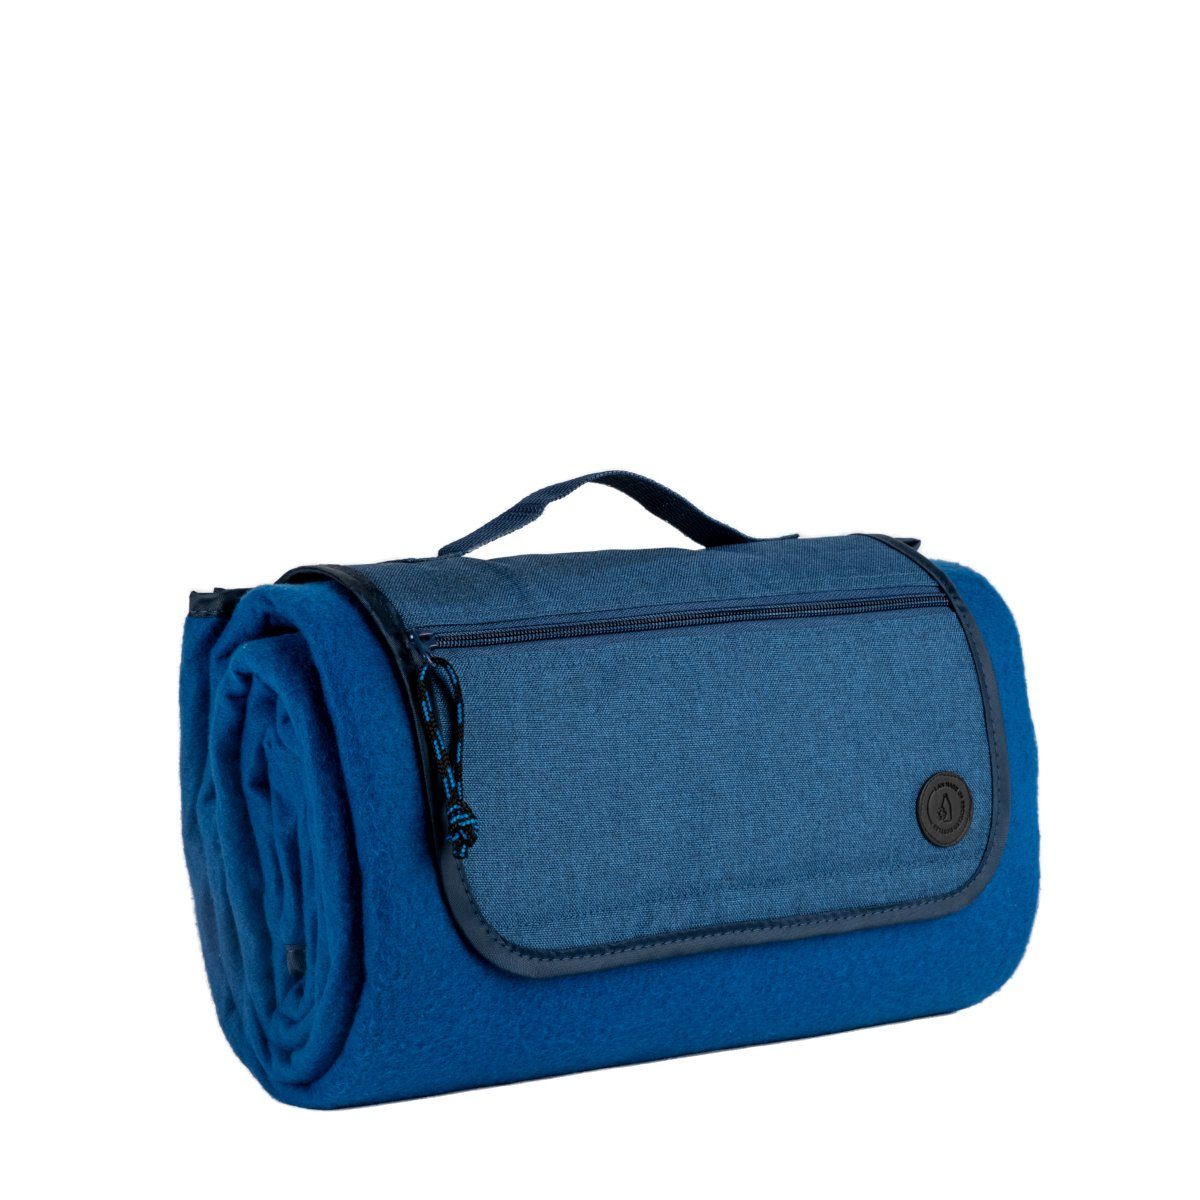 Picknickdecke Tragbare Picknickdecke CITY - Farbwahl, sagaform, Größe Decke ausgerollt 130x170cm, mit isoliertem Boden Blau